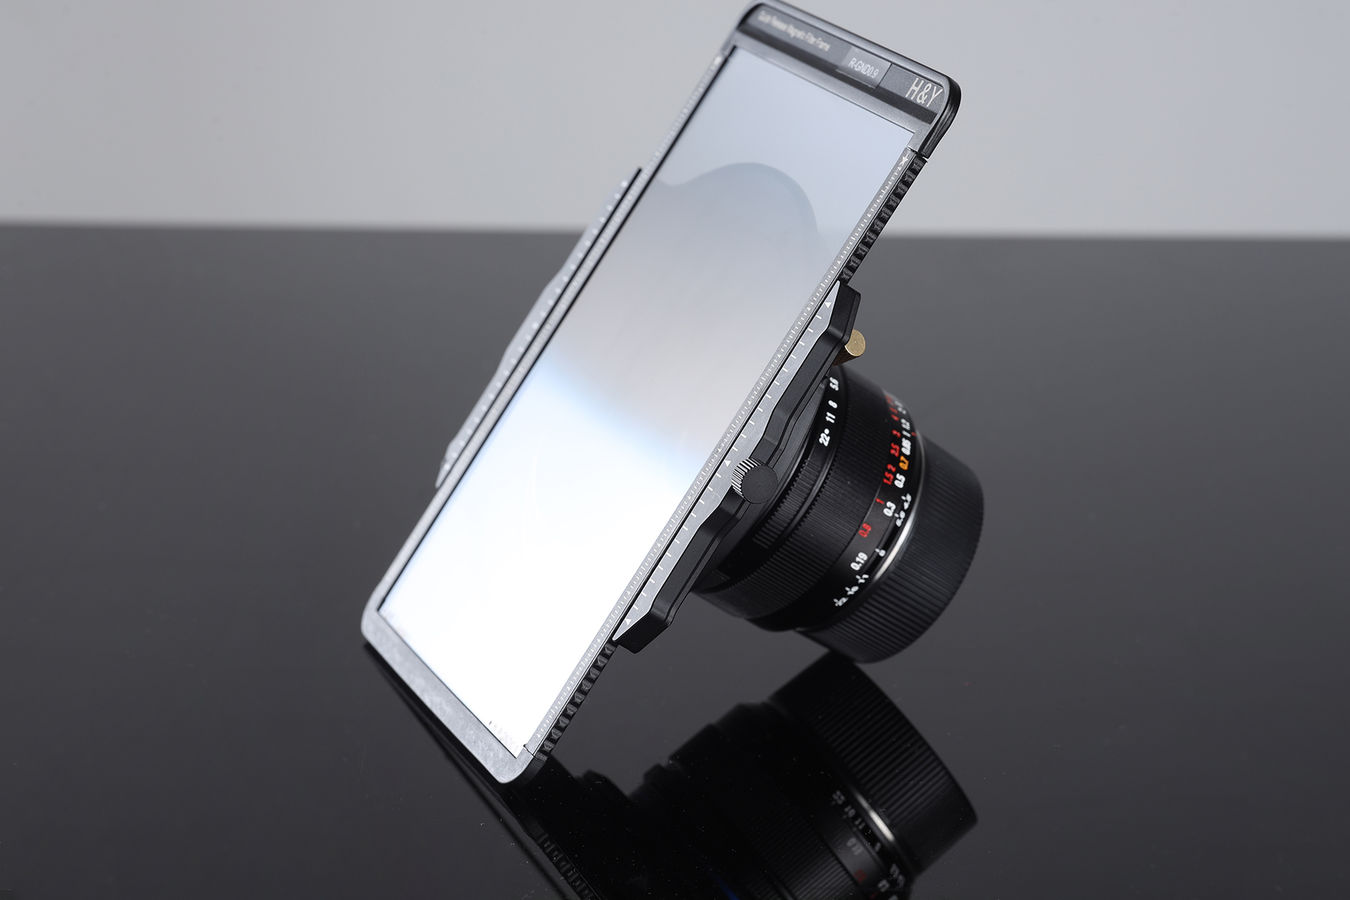 Obiektyw Laowa 14 mm f/4,0 FF RL Zero-D - mocowanie Sony E